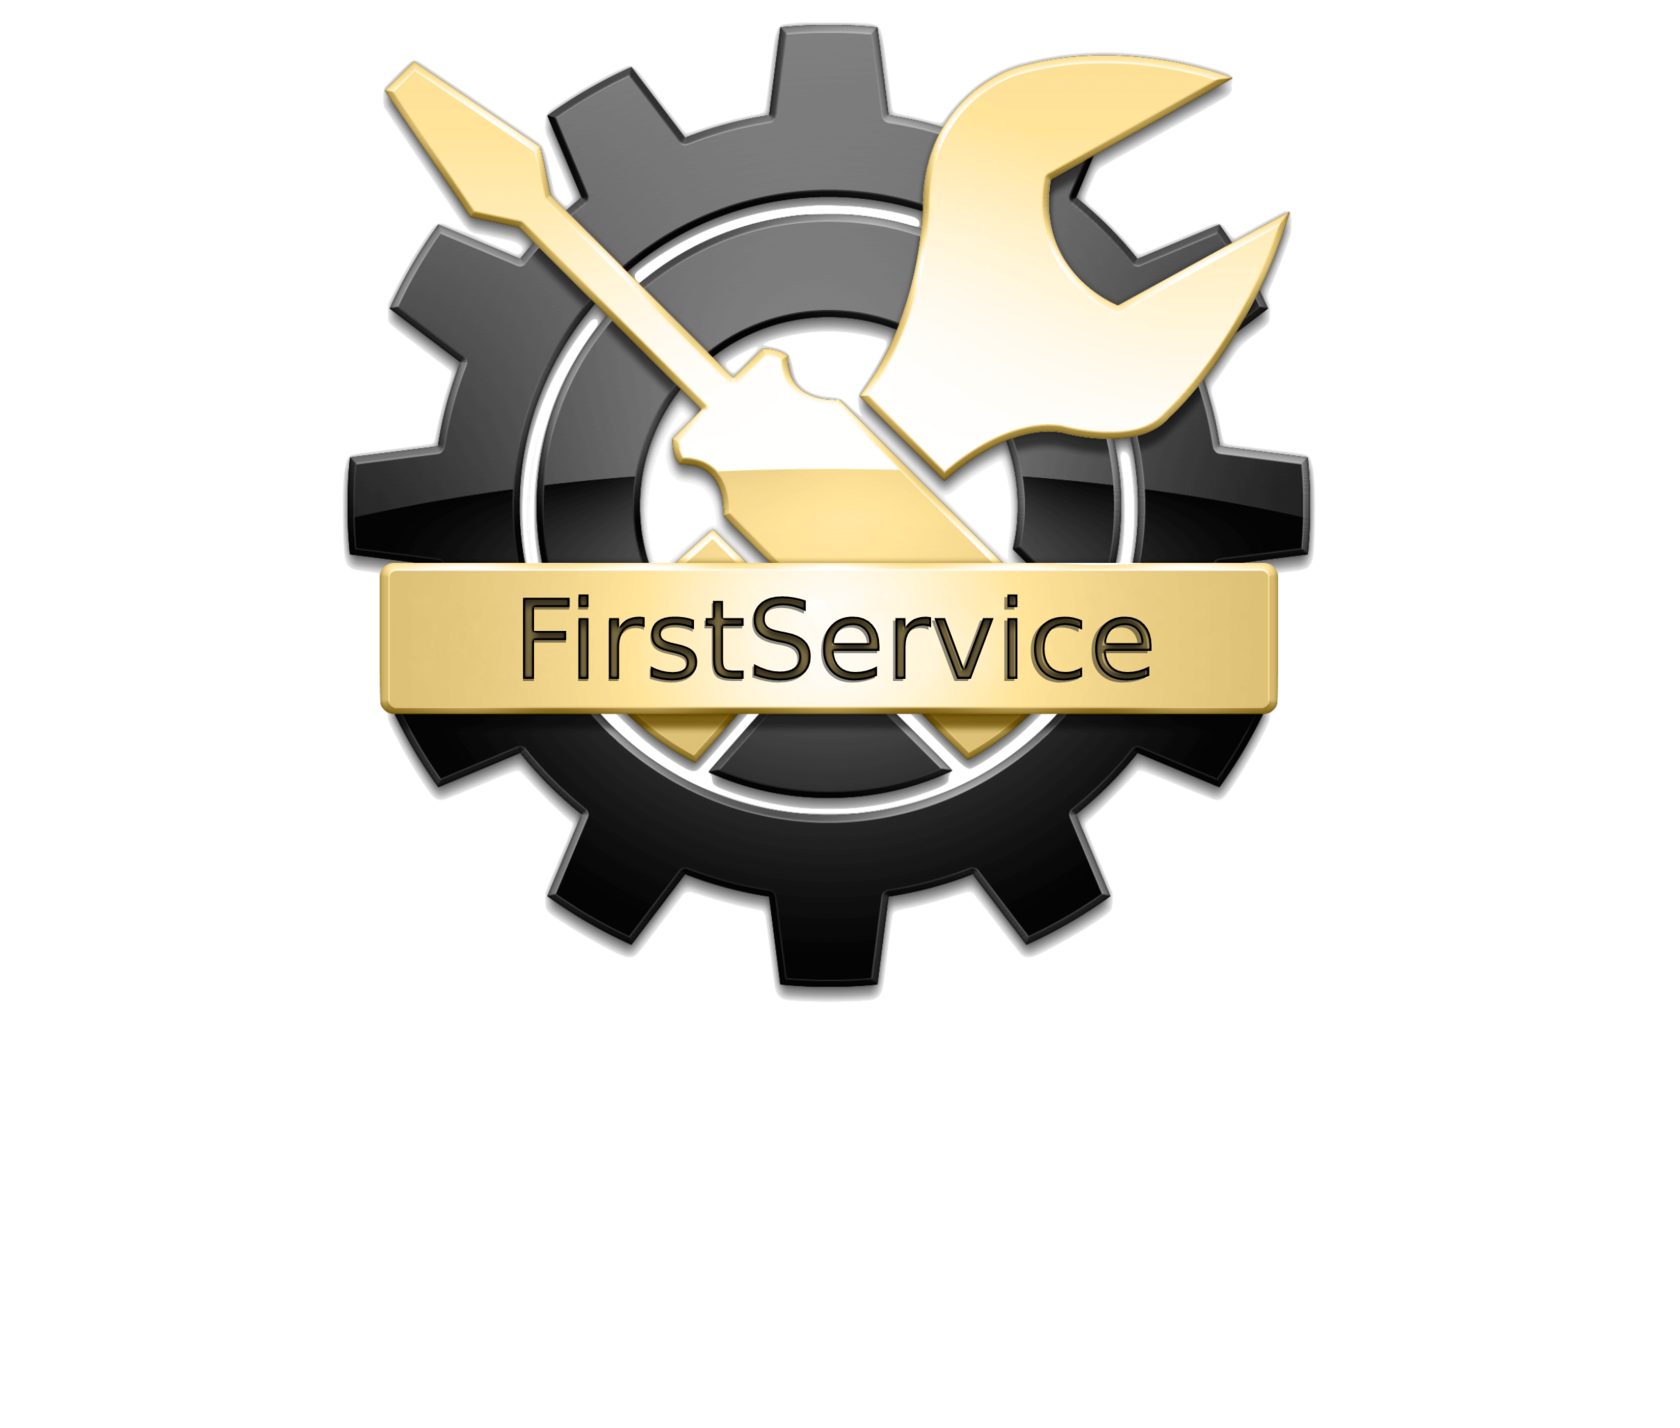 Логотип Единой службы ремонта - ремонт насосов и насосных станций в Краснодаре и Краснодарском крае